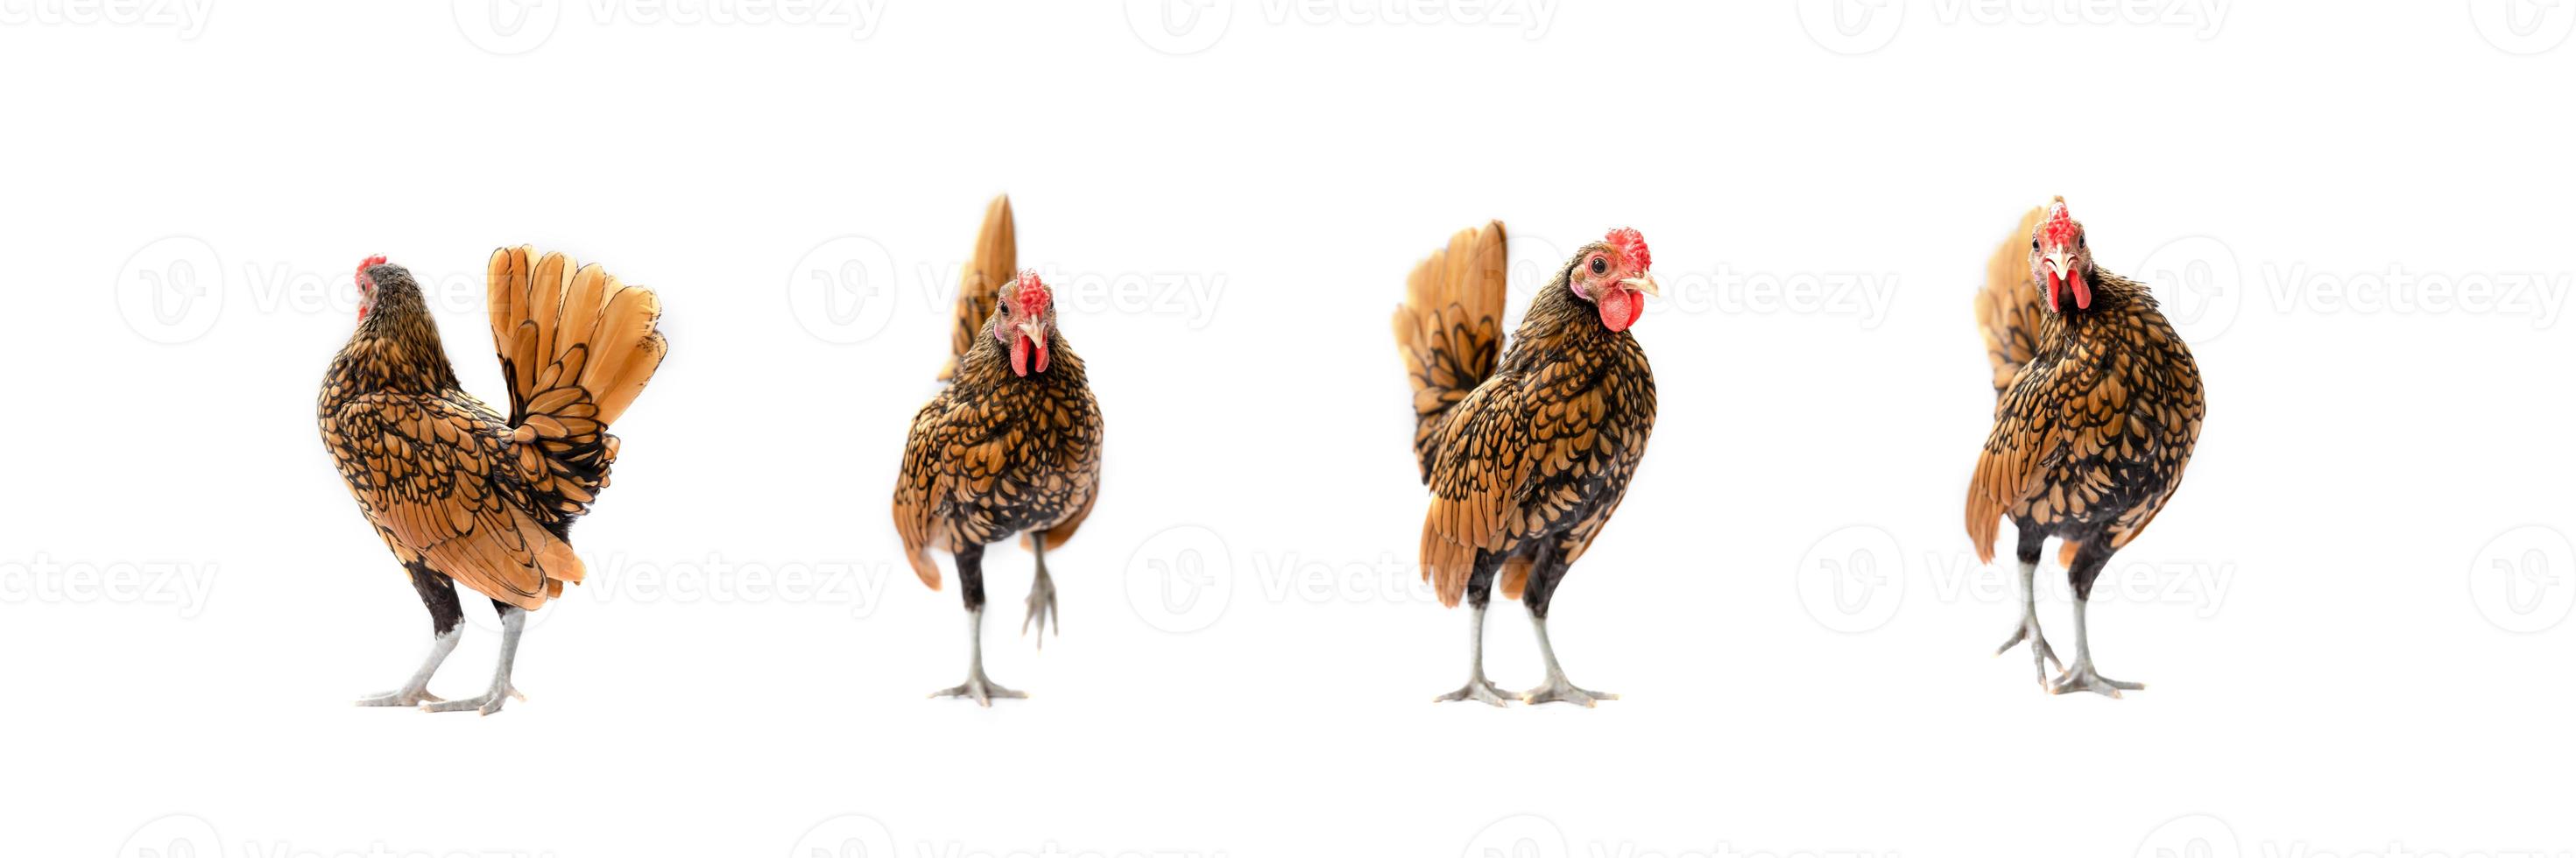 quatro frango sebright marrom isolado no fundo branco em studiolight foto